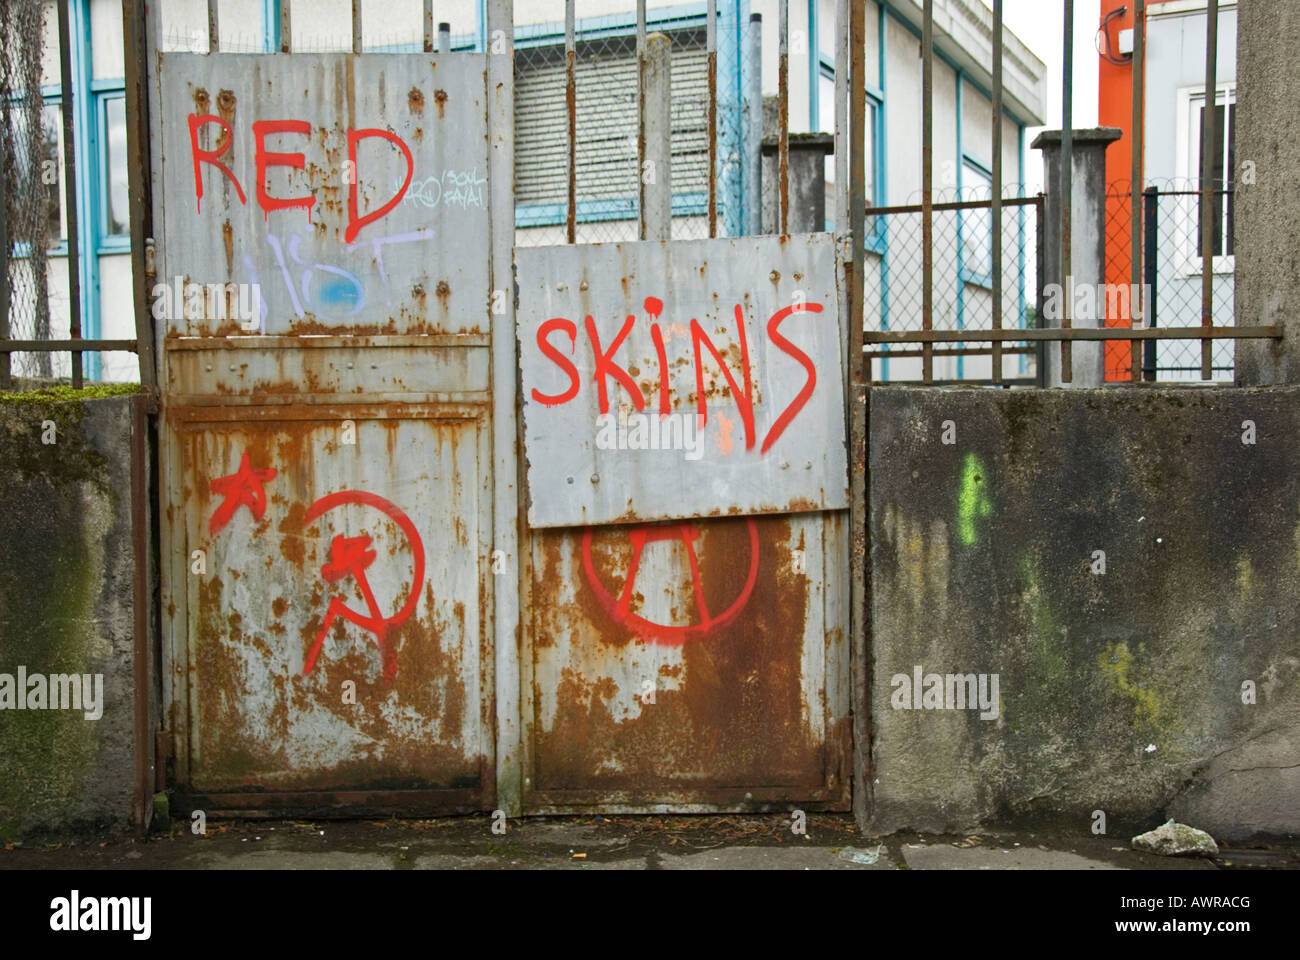 Stock Foto von Graffiti für die französischen Redskins-Skinhead-Bewegung die Redskins haben eine Tendenz zum Kommunismus Stockfoto